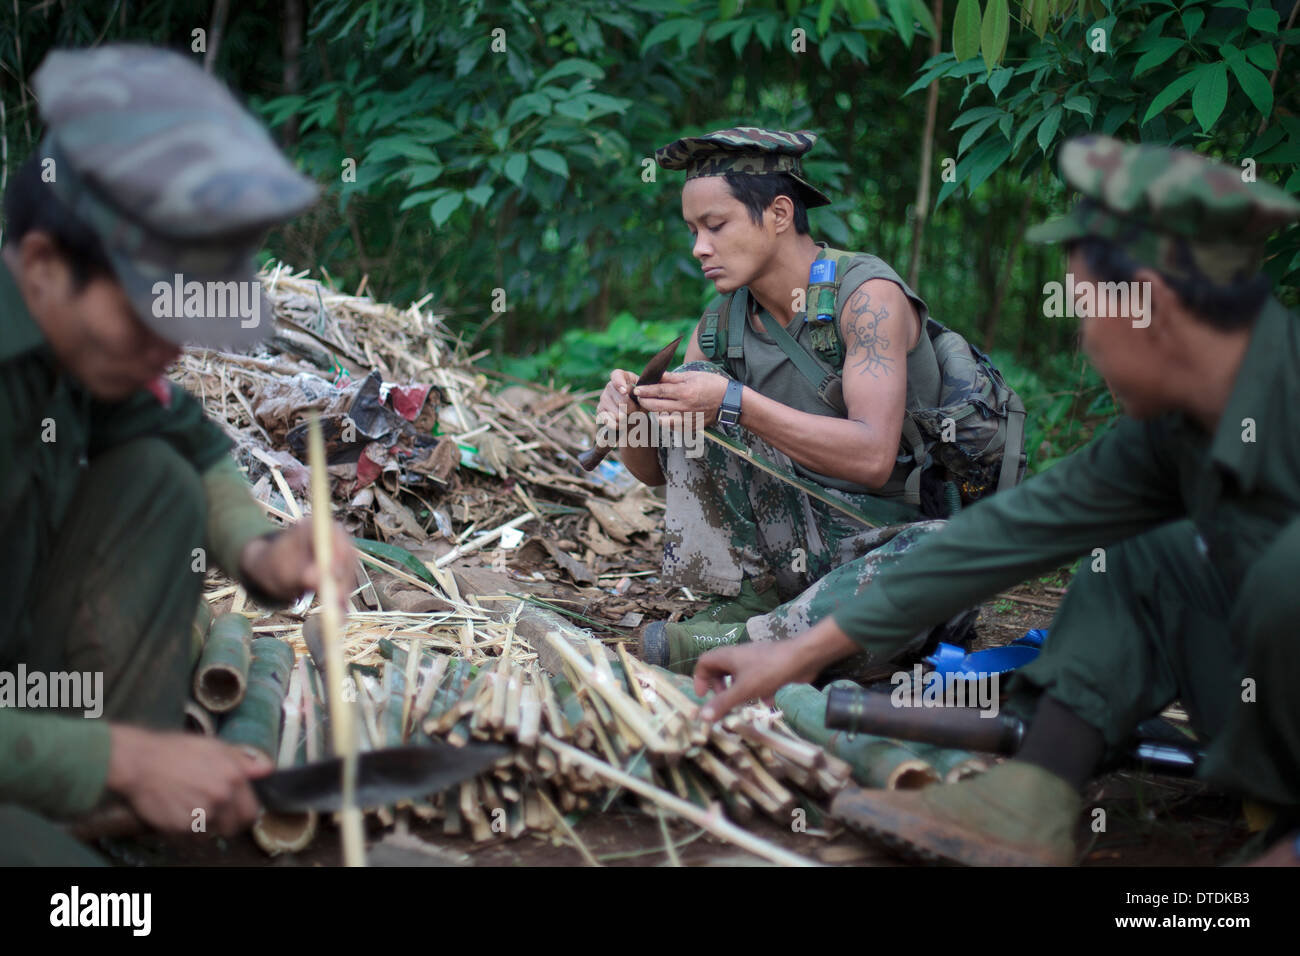 Kia-Mitglieder schärfen Bambusstöcke für Put auf dem Boden des Dschungels wie fallen in Rubber Hill Beitrag an vorderster Front Stockfoto